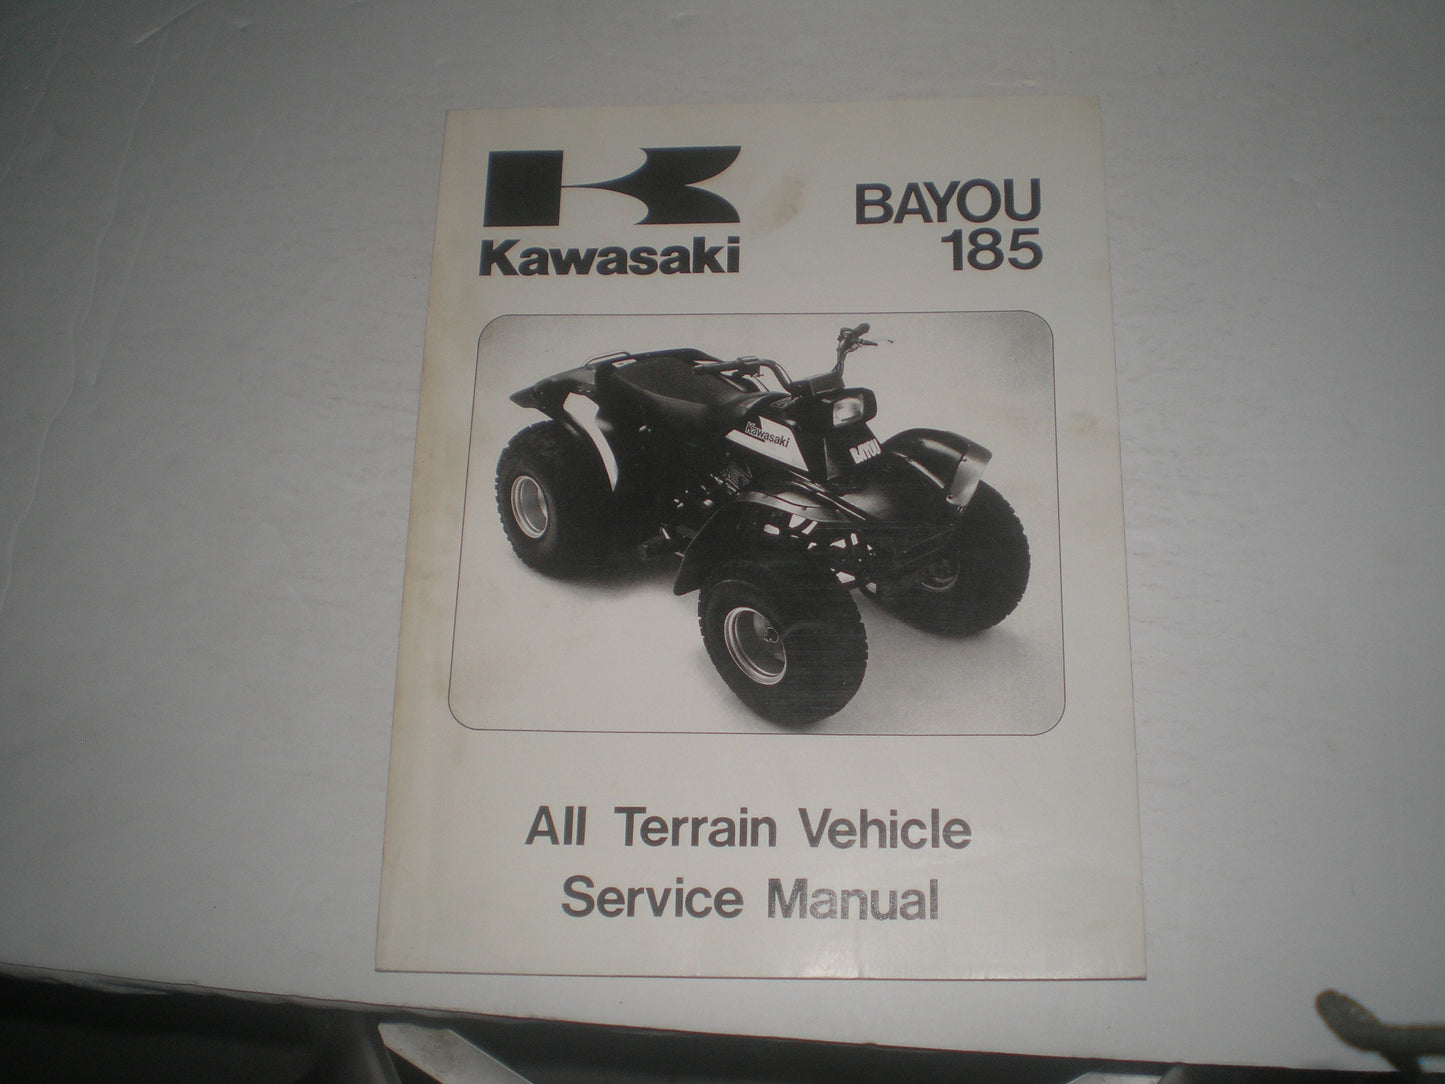 KAWASAKI KLF185 A1  Bayou 185  1985  Service Manual  99924-1058-01  #1346